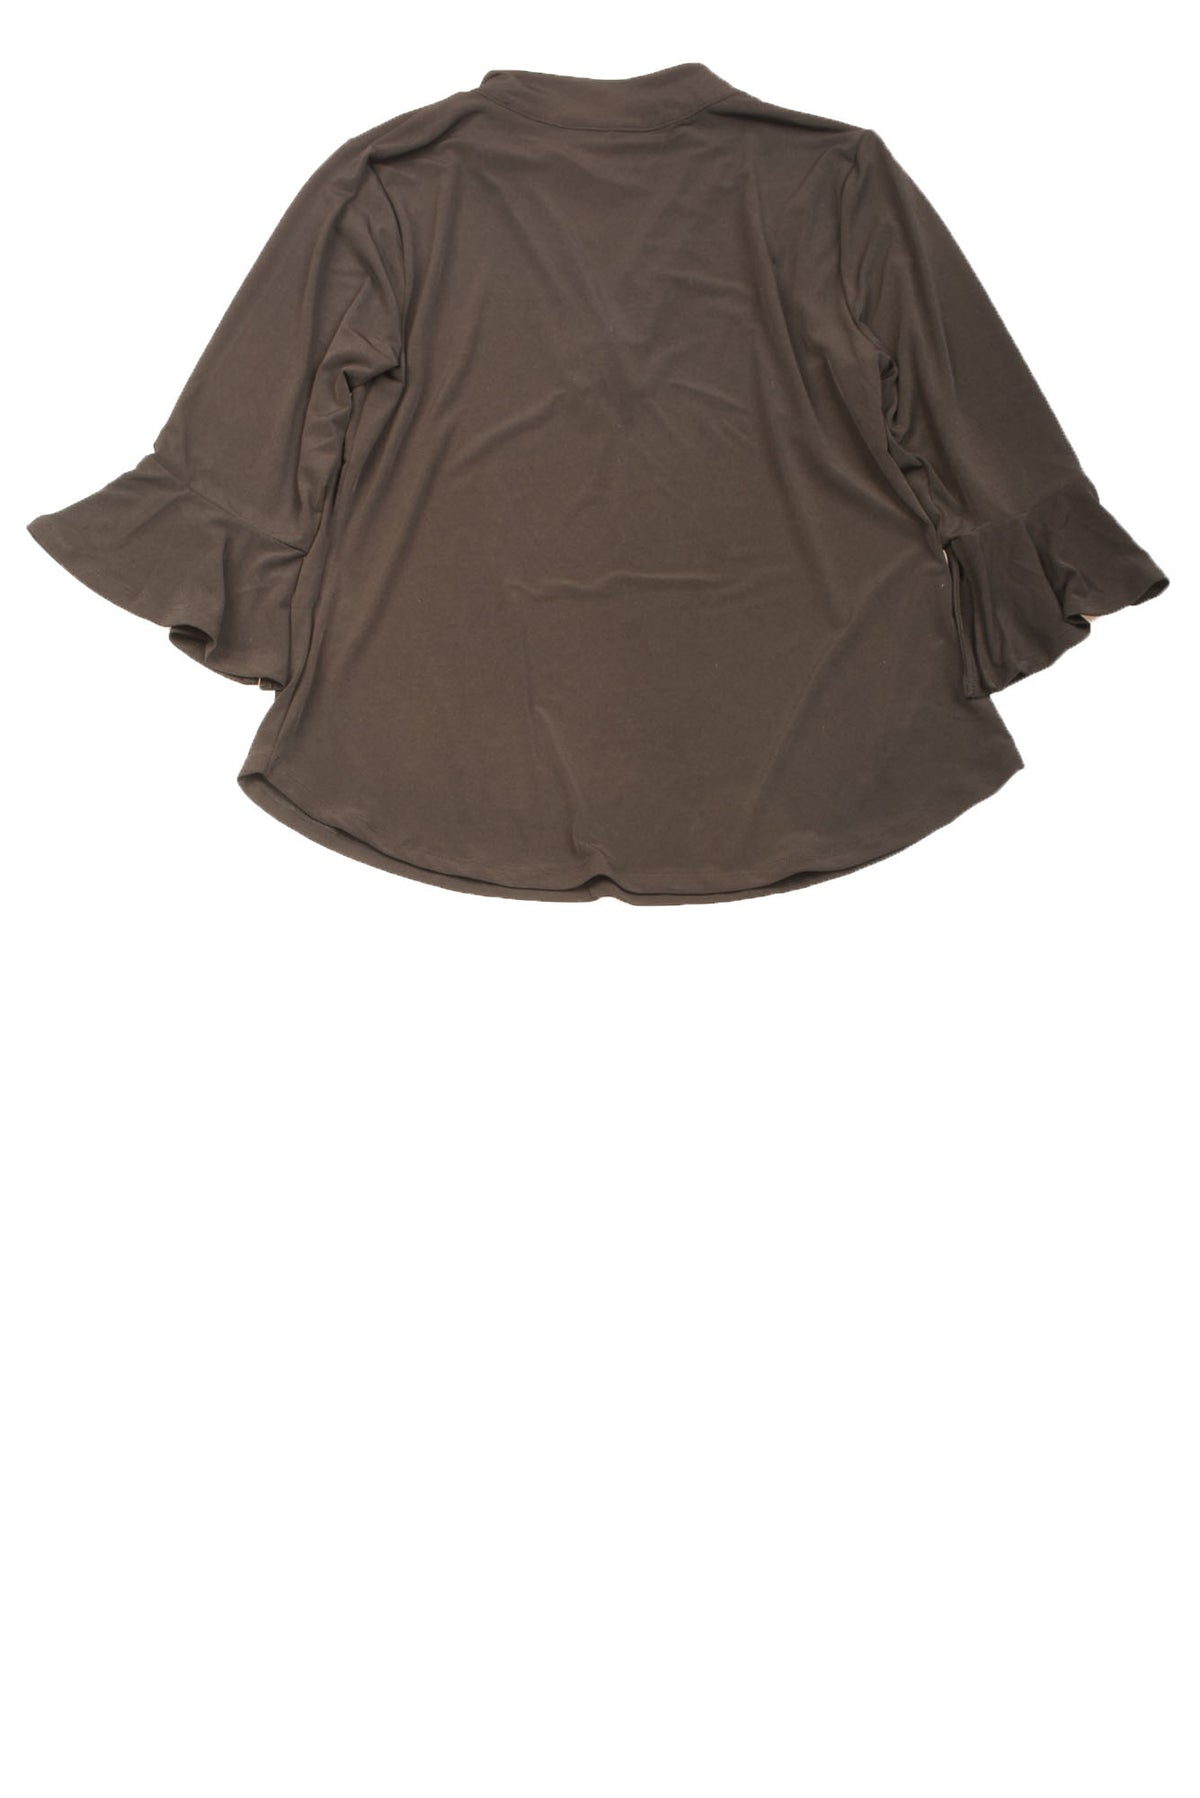 NY&Co Women Shirt Blouse 3/4 Sleeve Black Top Size Large